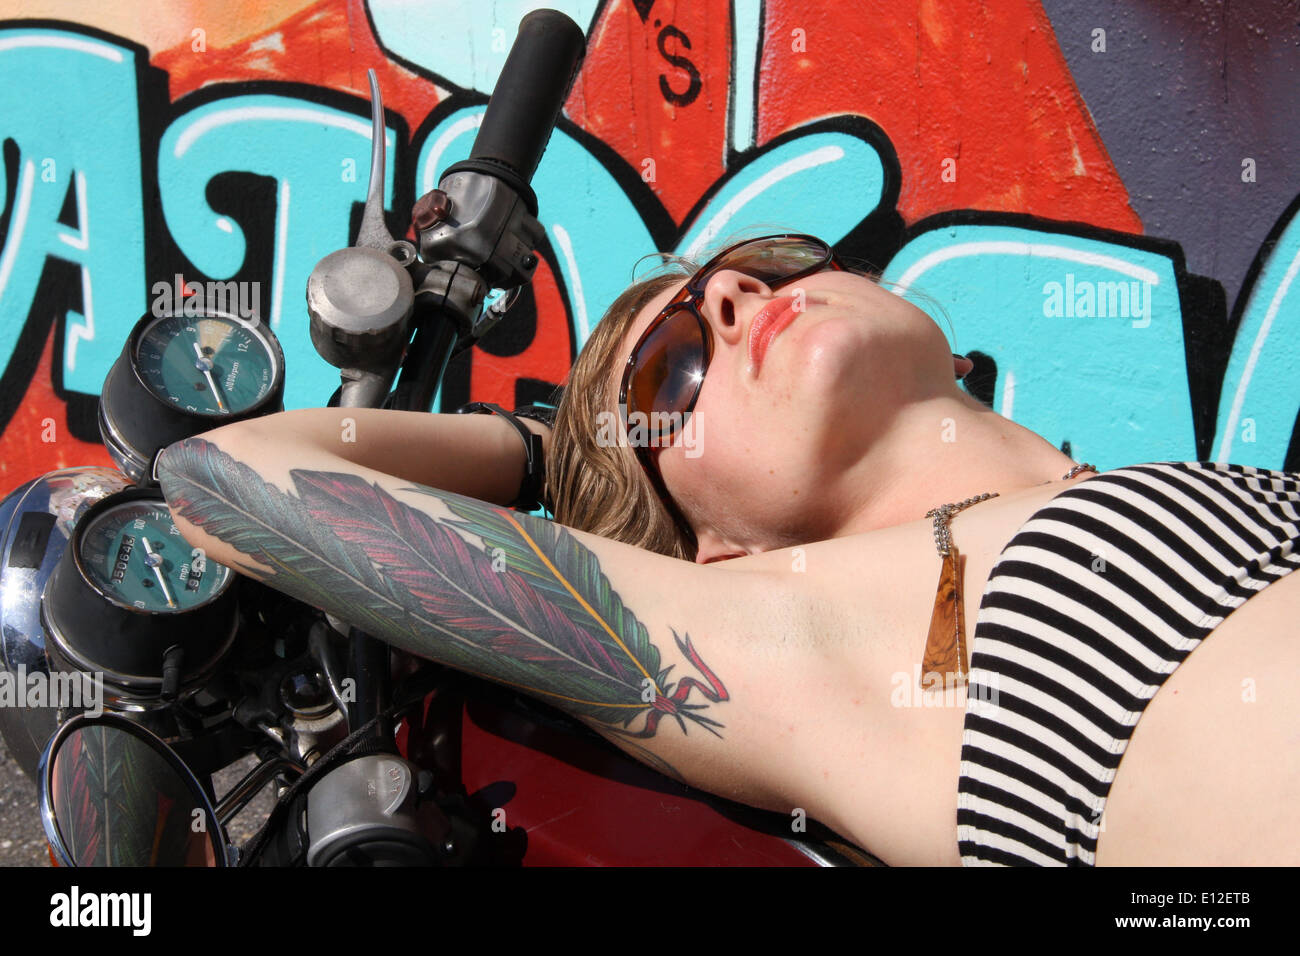 Motociclo chic libertà tattoo sunny fashion graffiti piume occhiali da sole costume da bagno macro di colore bianco Foto Stock